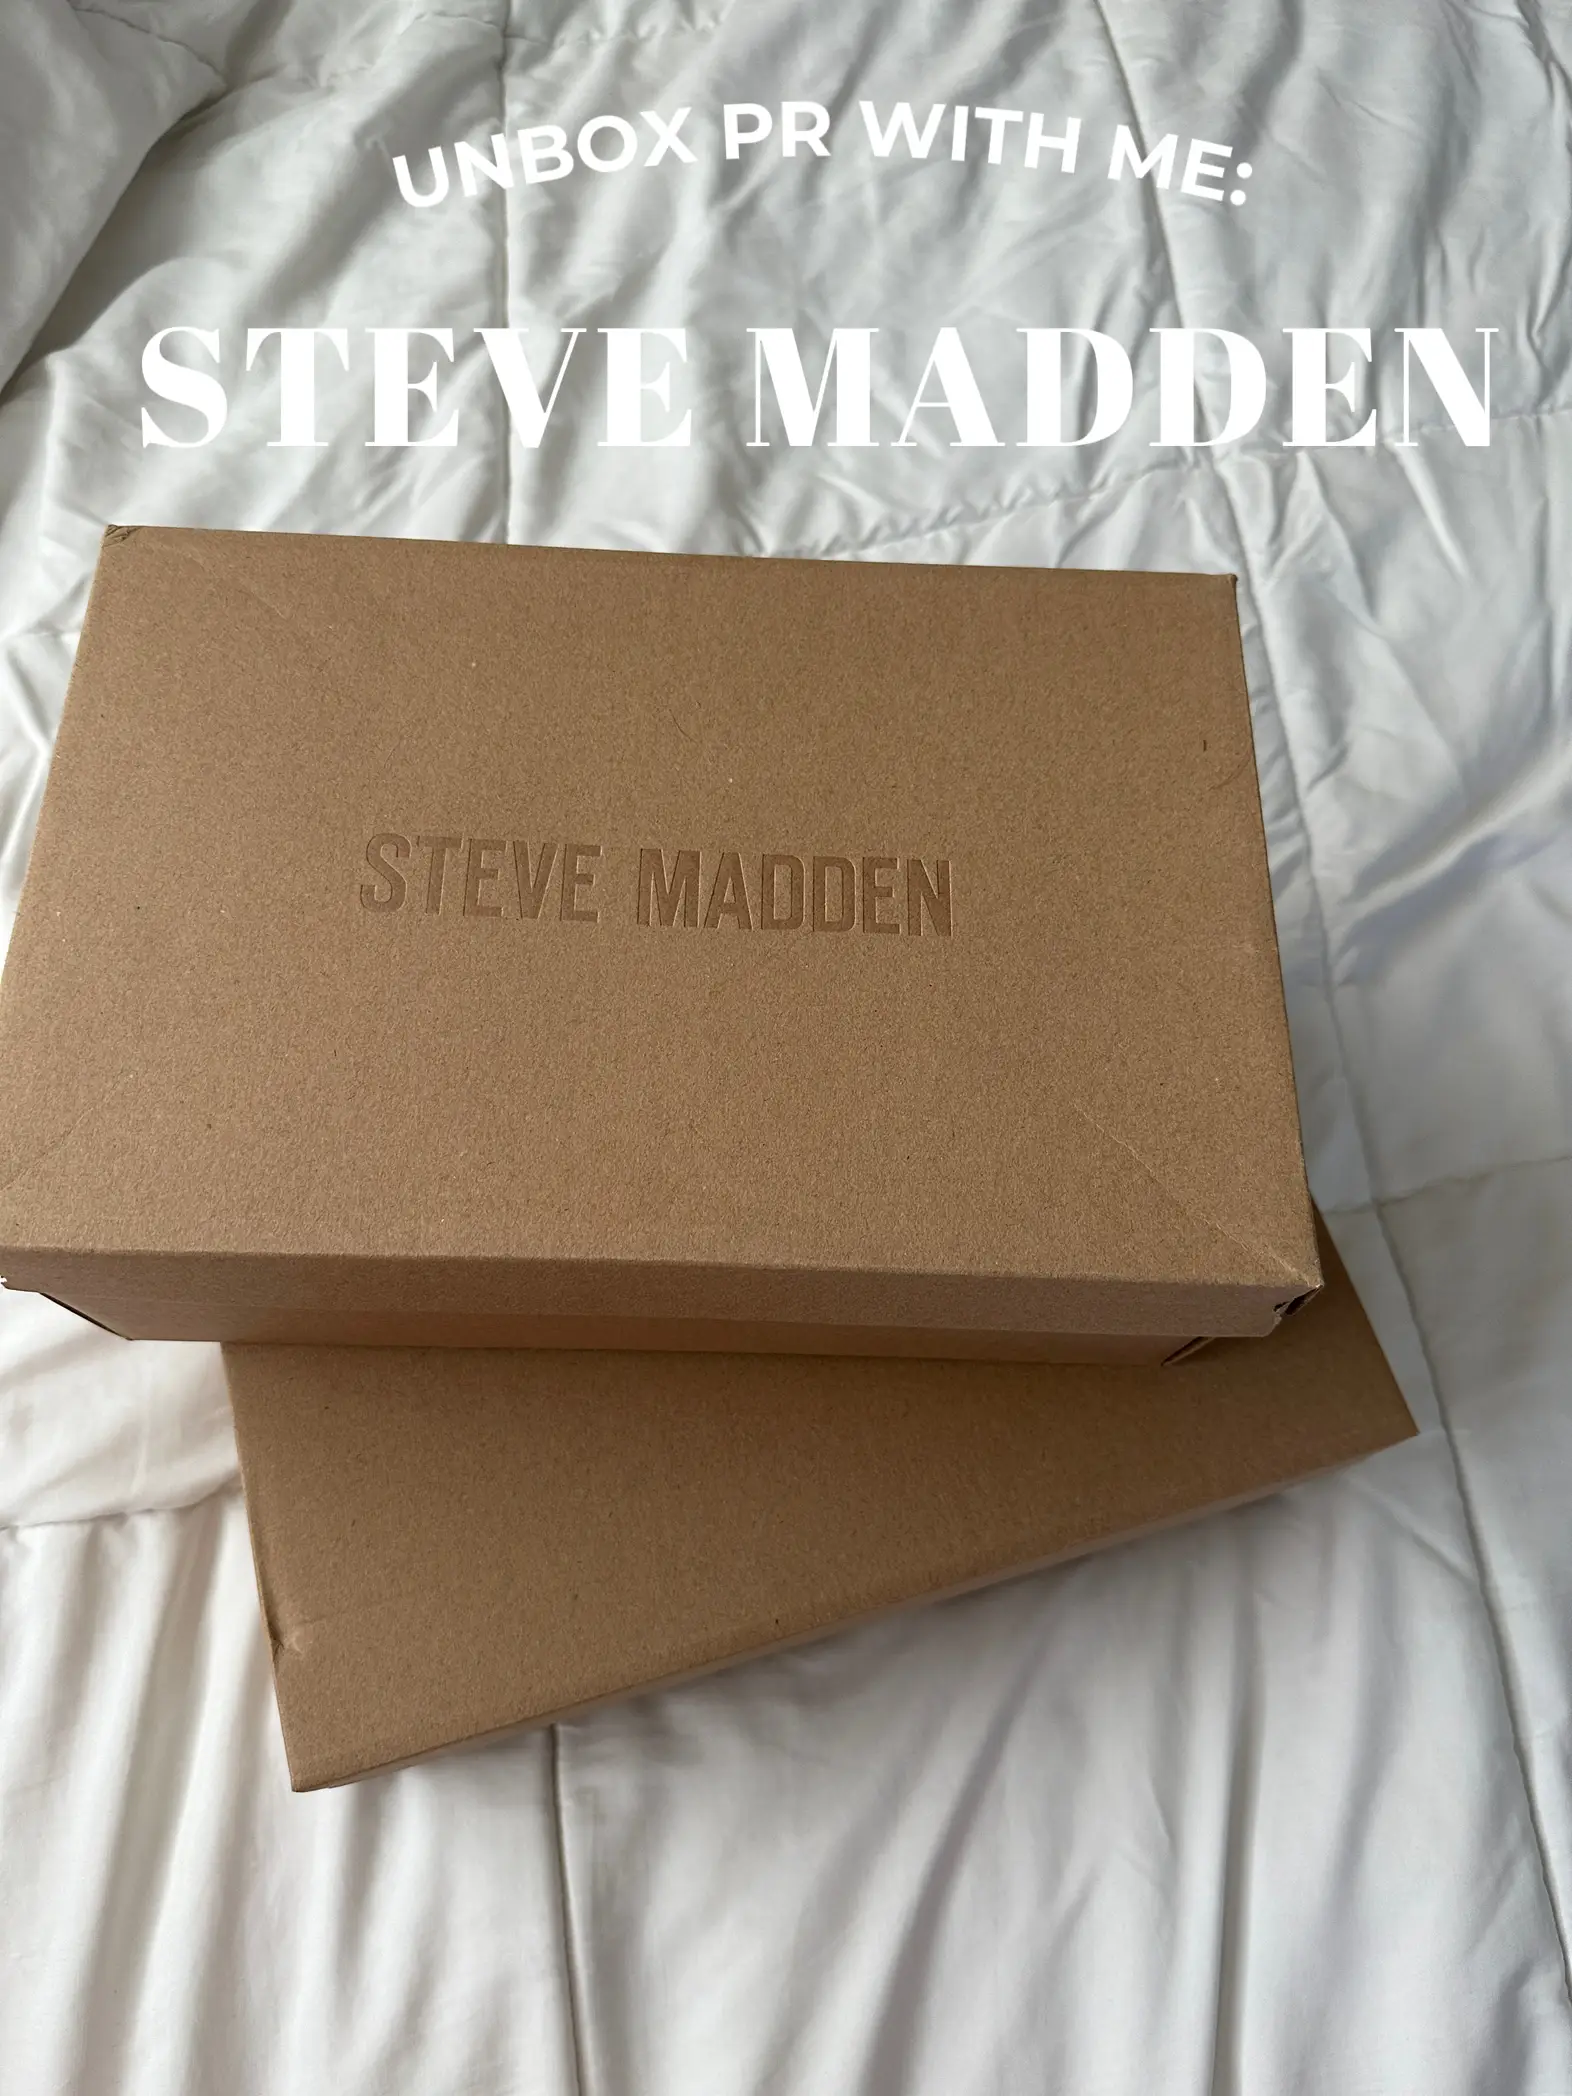 Steve Madden Possession Sneaker Review/Unboxing 